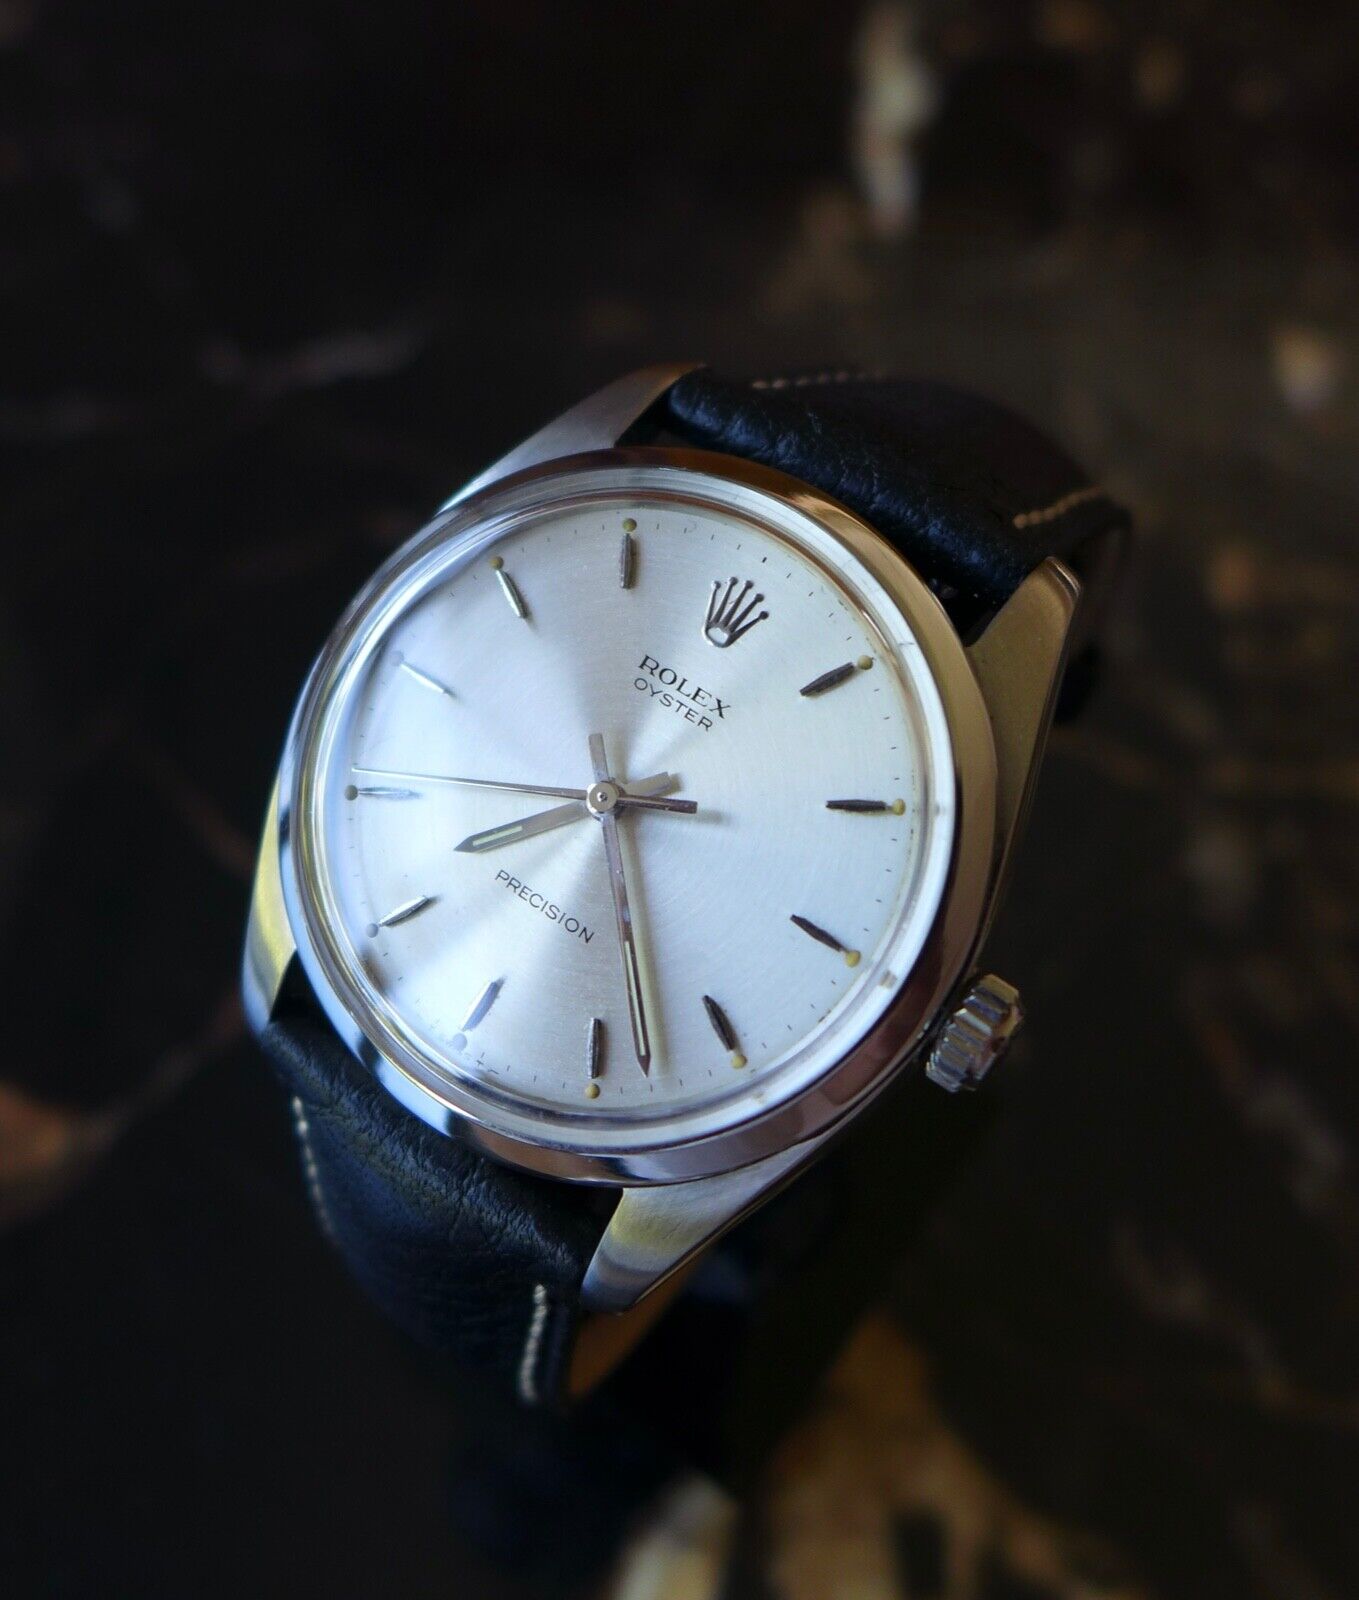 ヴィンテージ ロレックス腕時計 オイスター・プレシジョン "オーバーサイズ" 36mm S/STEEL製 1966年